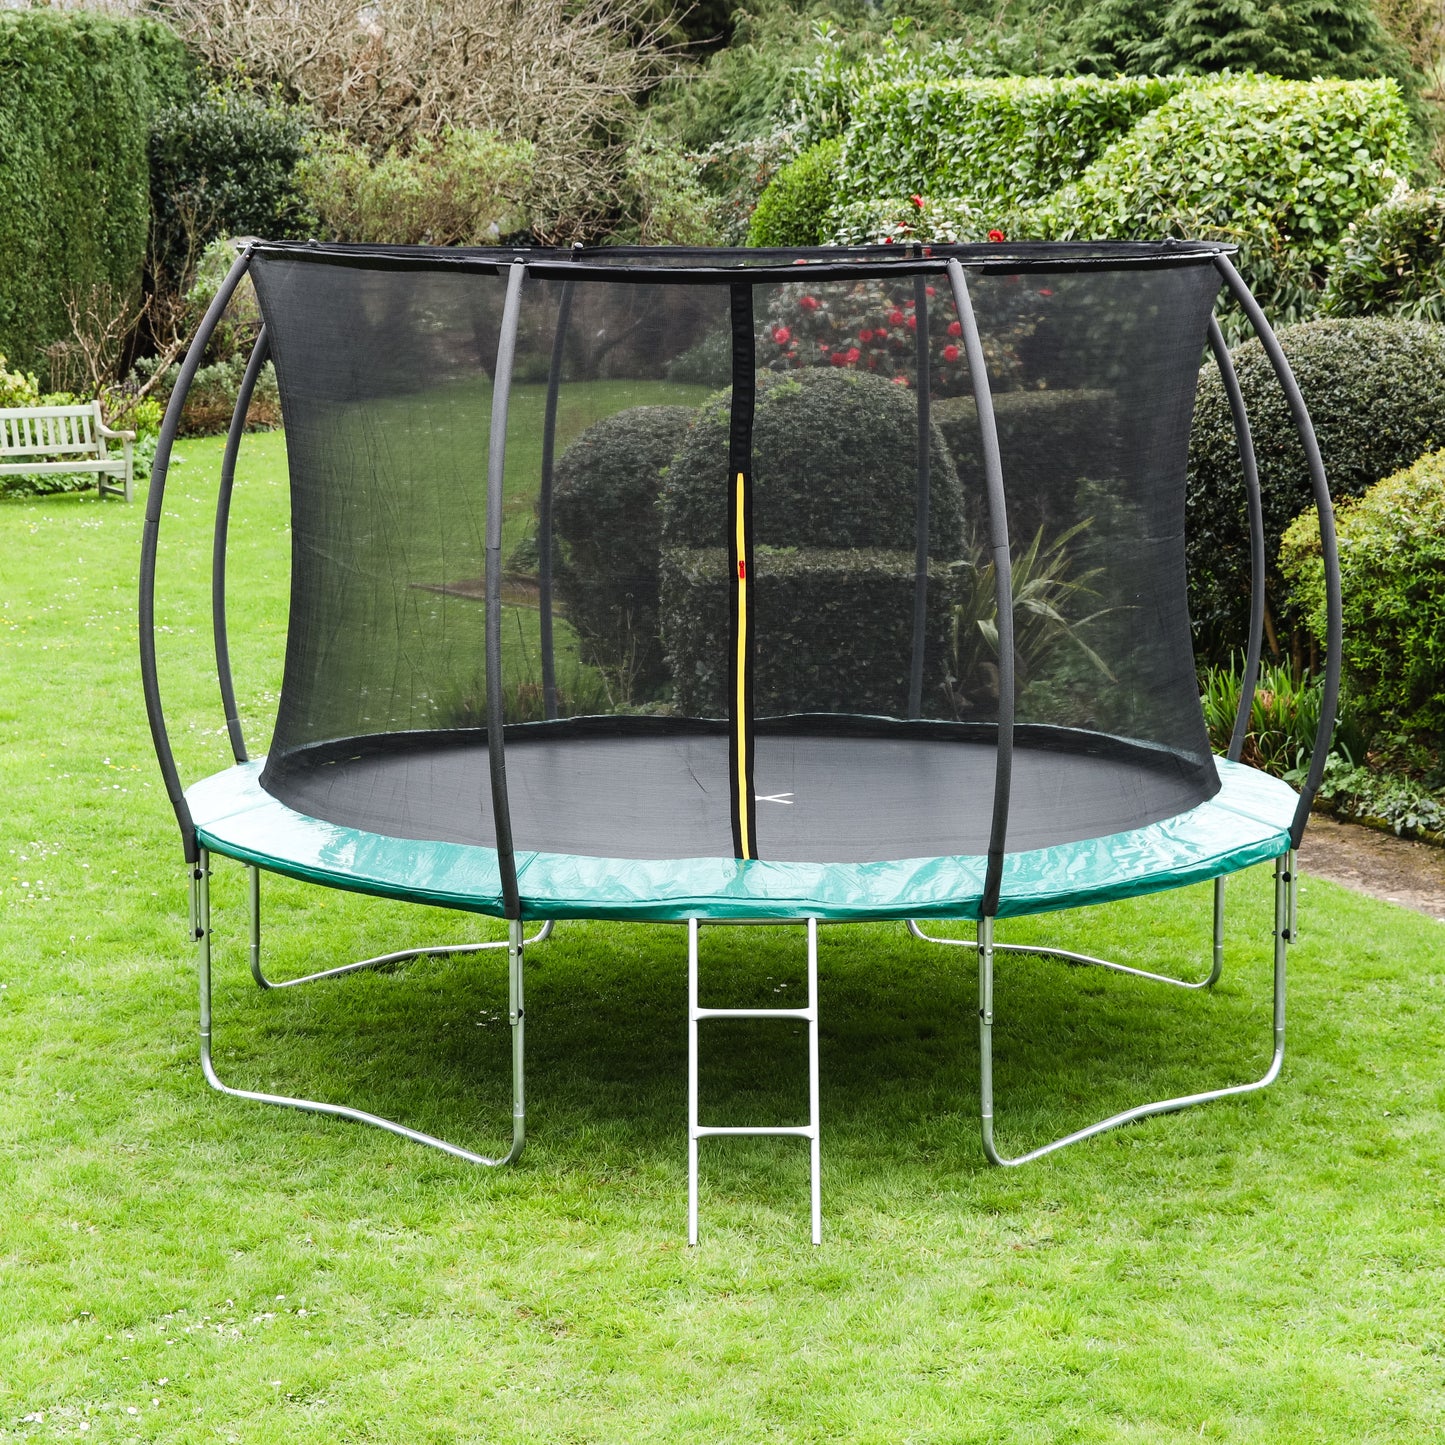 Leapfrog Green 12ft trampoline package